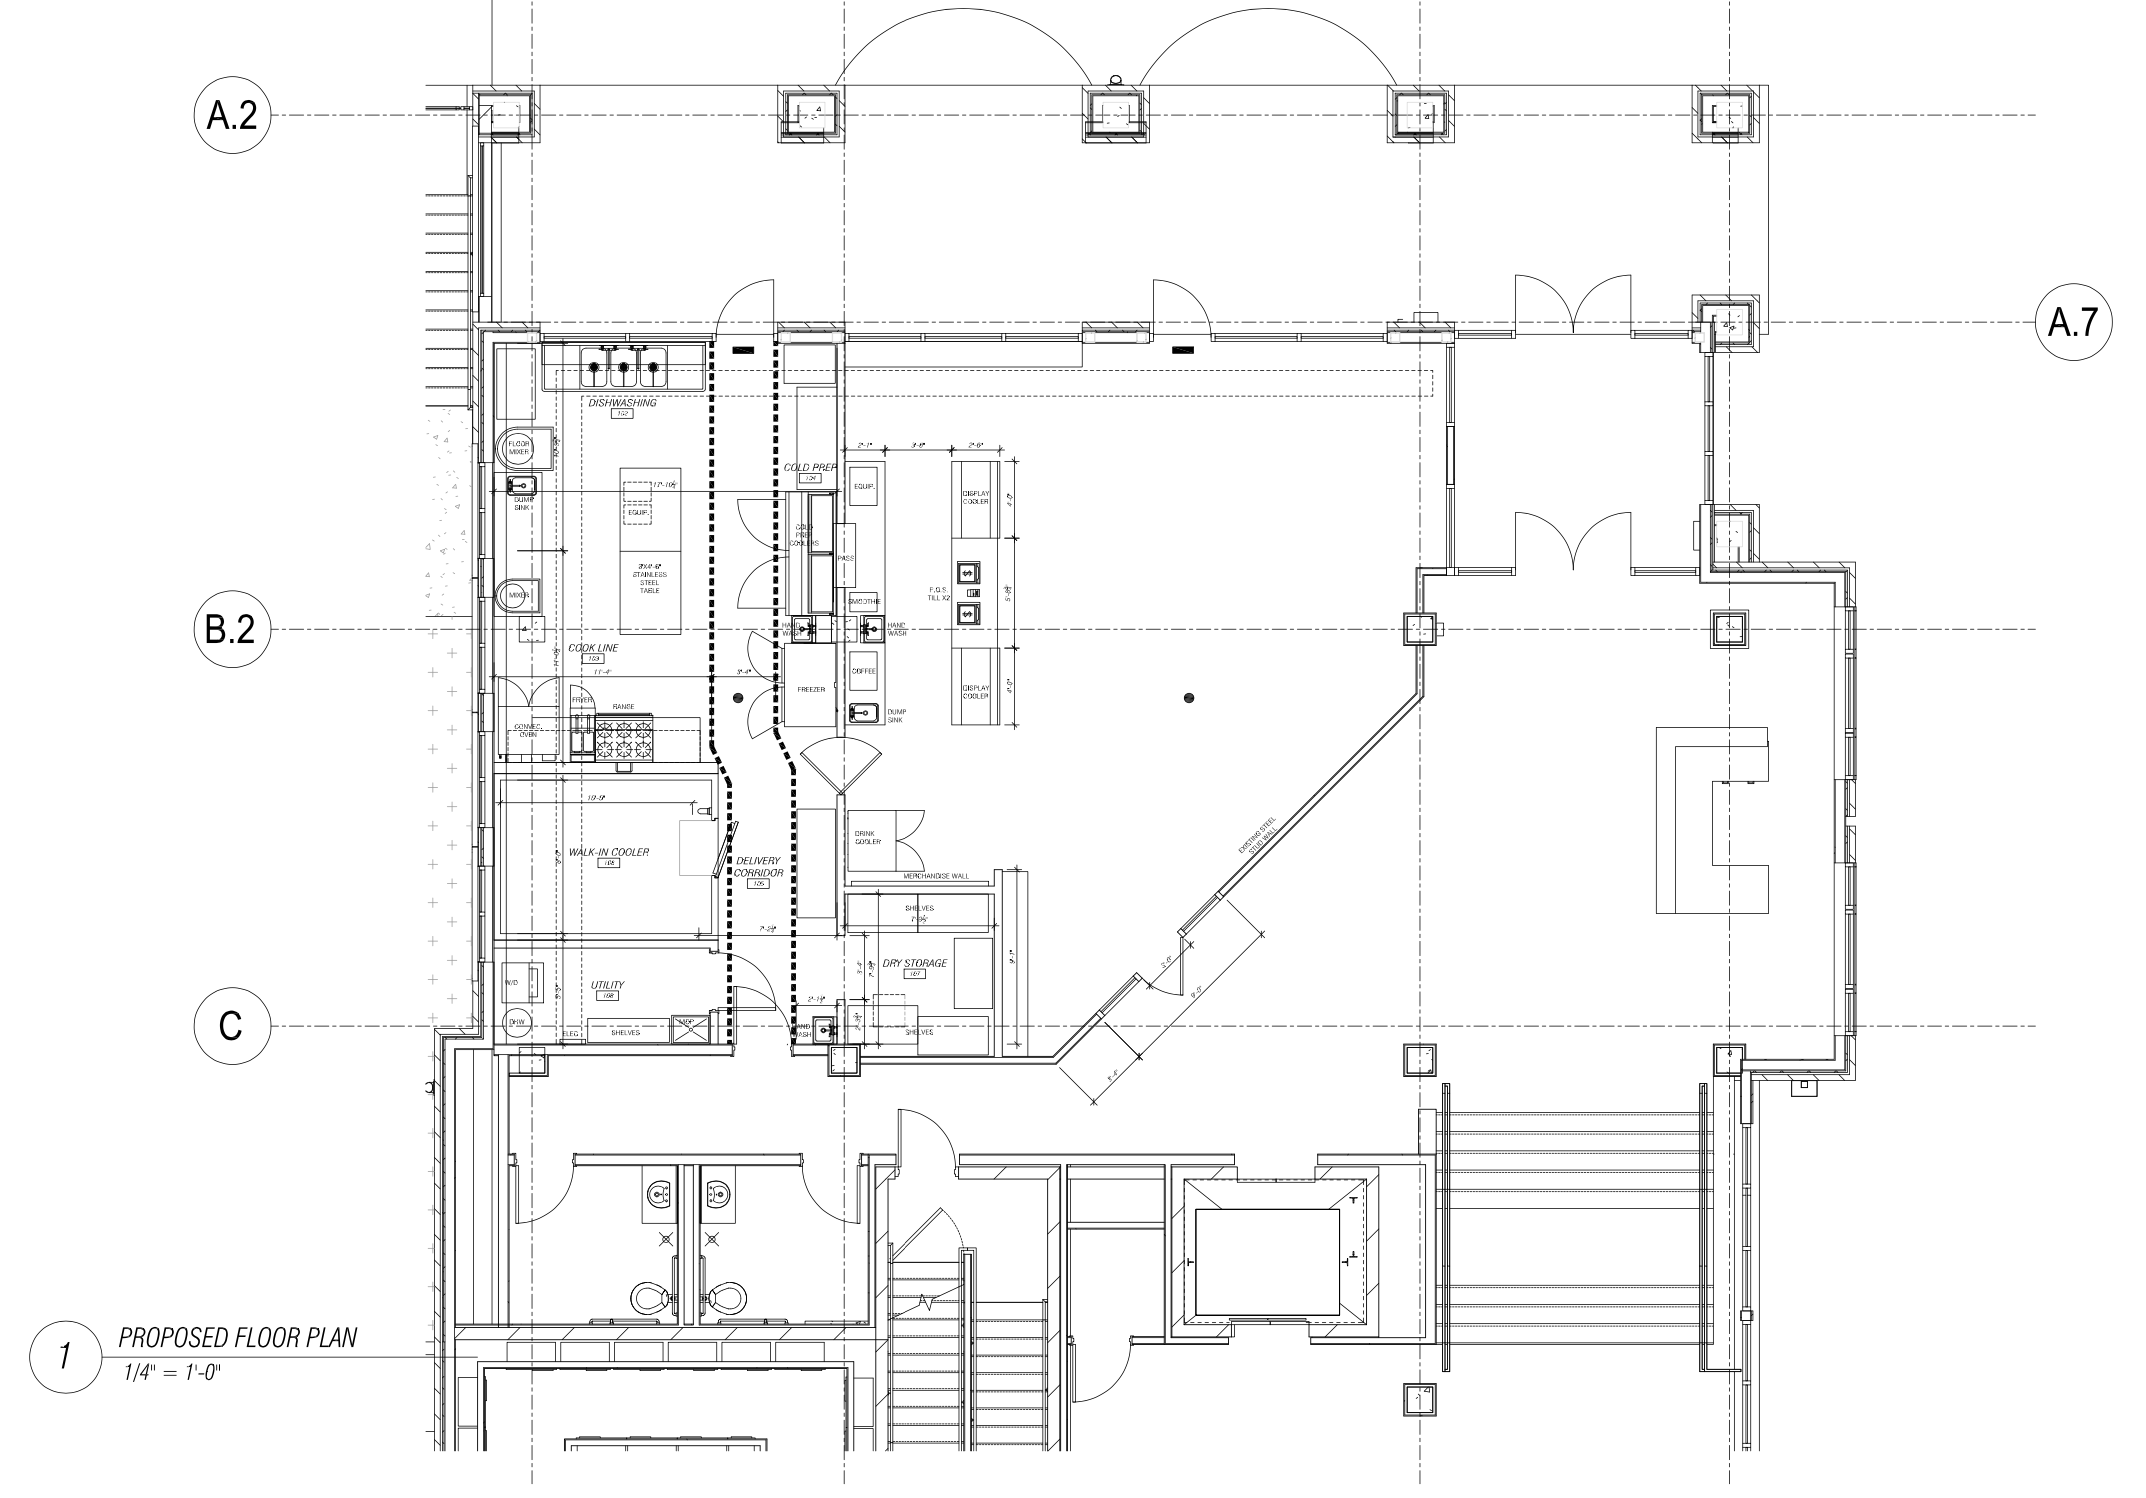 Lutunji's Palate Bakery & Cafe floor plan